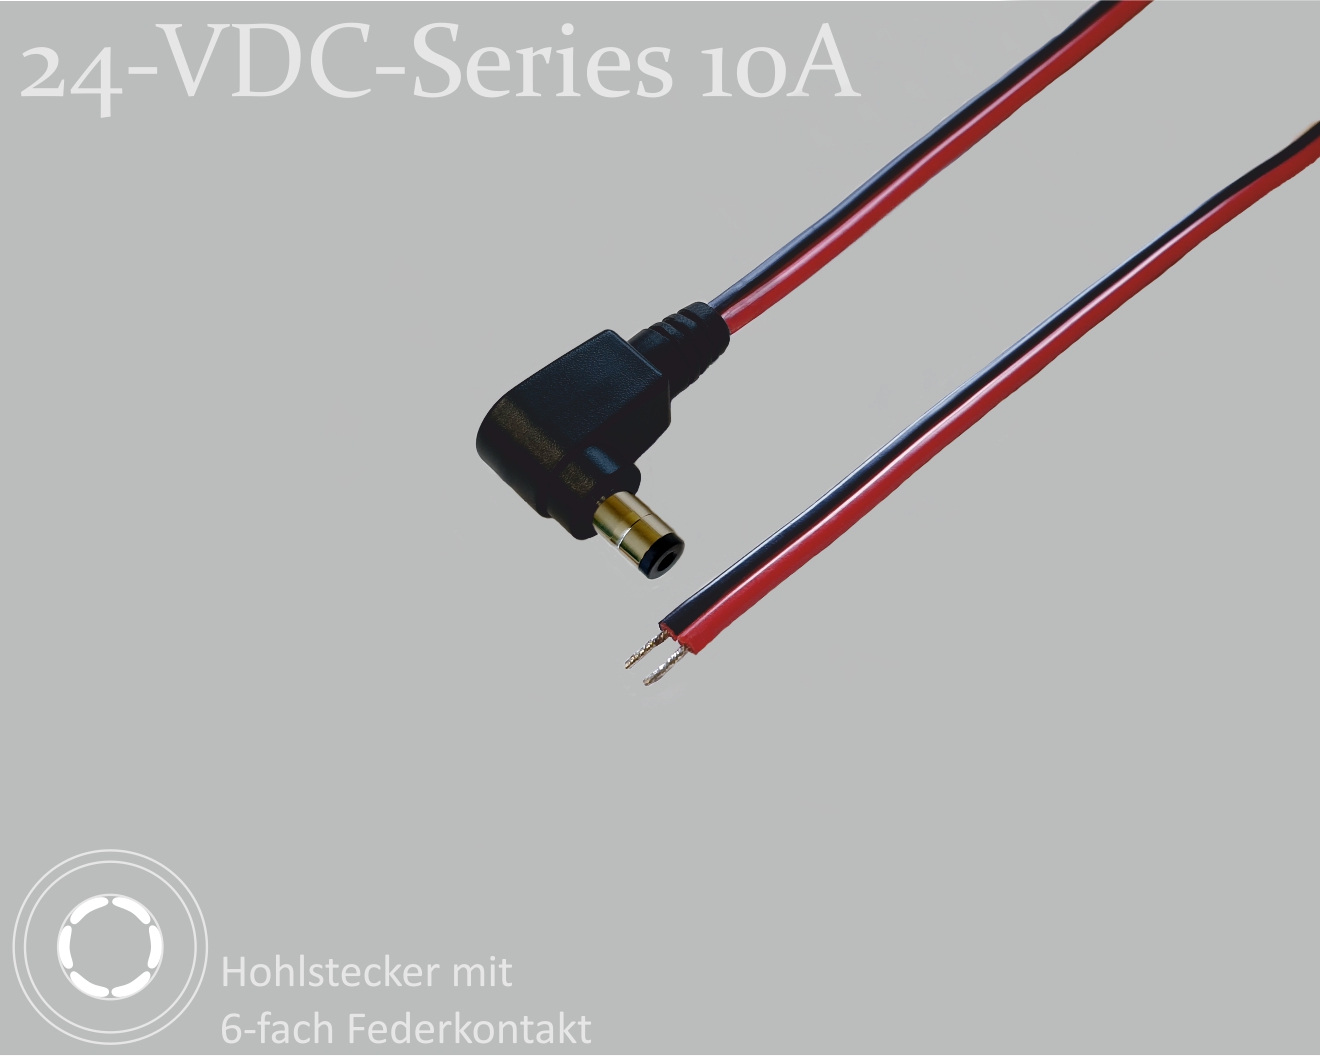 24-VDC-Series 10A, DC-Anschlusskabel, DC-Winkelstecker mit 4-Feder-Kontakt 2,5x5,5x9,5mm, Flachkabel 2x0,75mm², rot/schwarz, verzinnte Enden, 0,75m